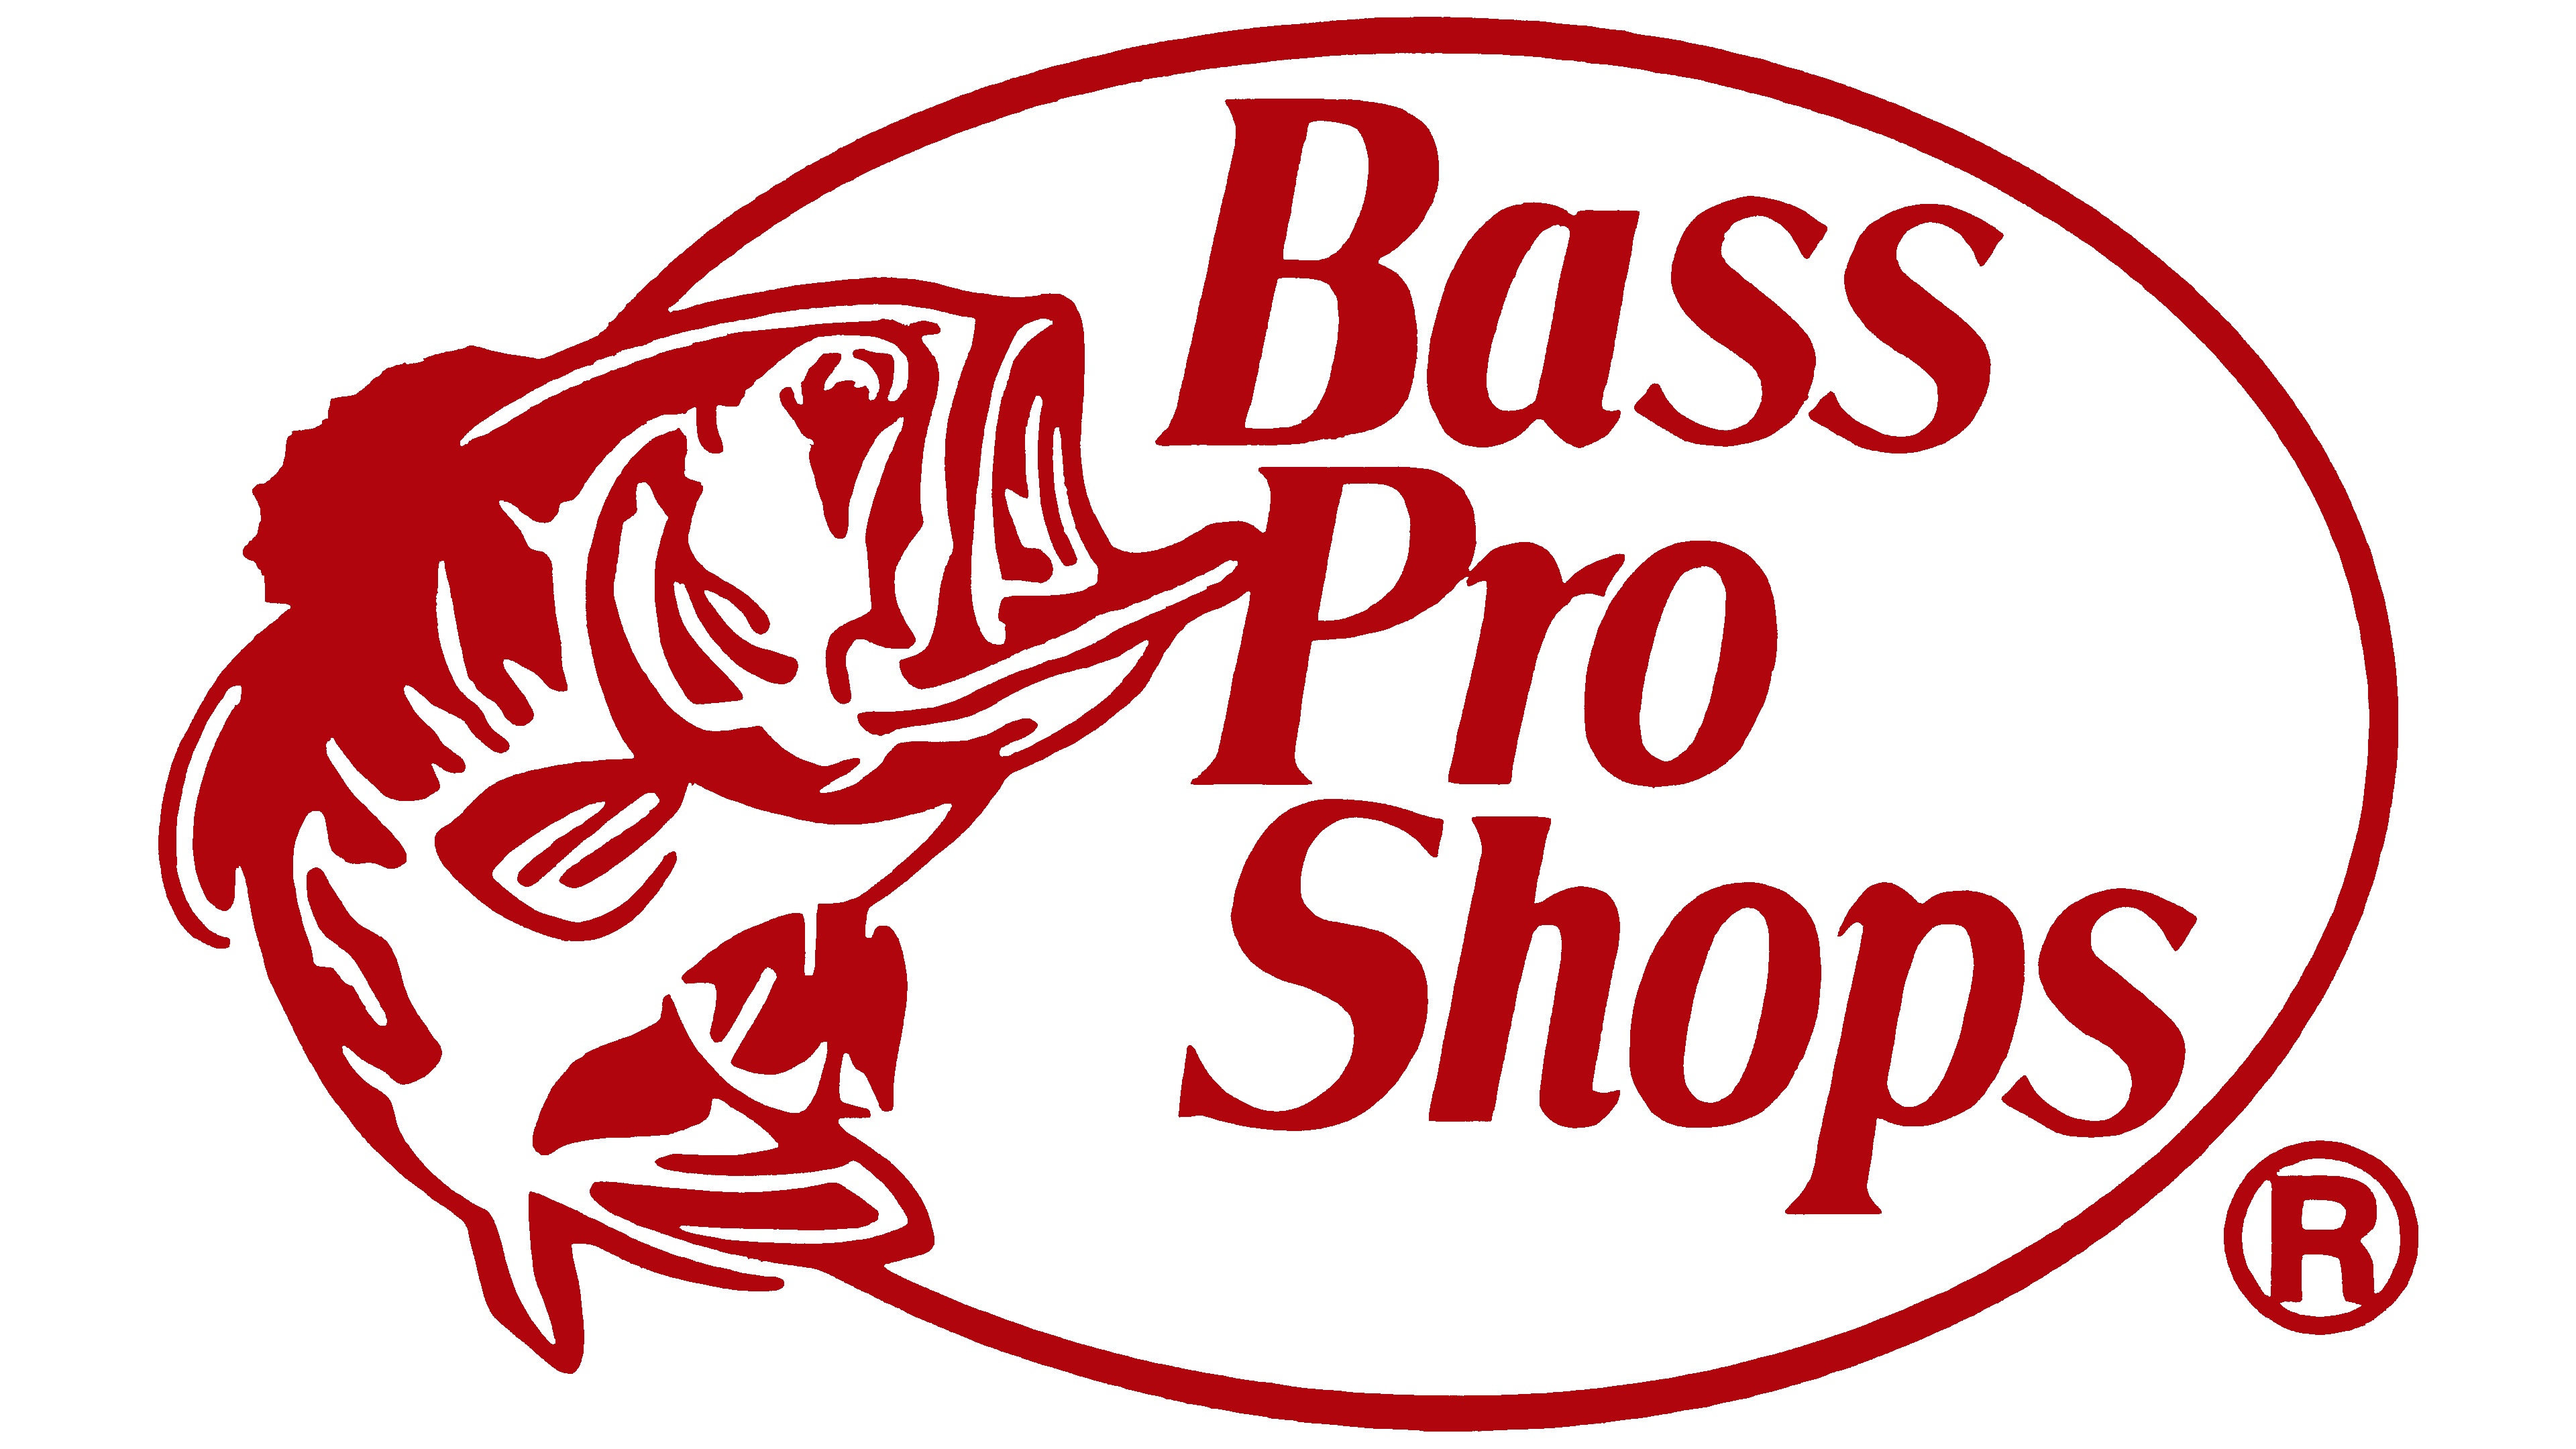 Bass Pro shops logo. Магазины Bass Pro shop. Bass co логотип. Bass Pro shops футболка. Pro shop 2